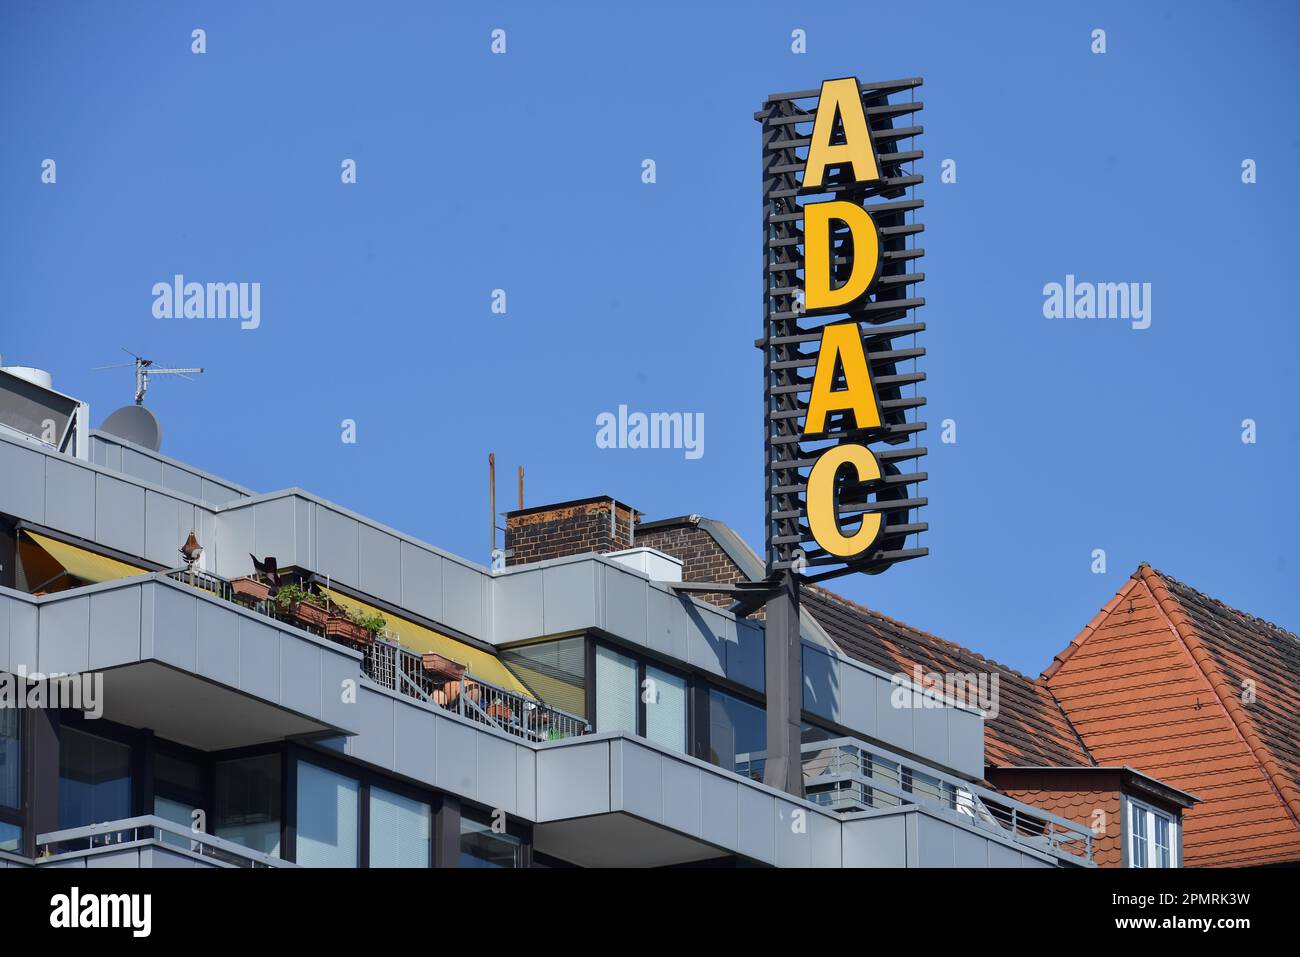 ADAC, Office, Bundesallee, Wilmersdorf, Berlin, Germany Stock Photo